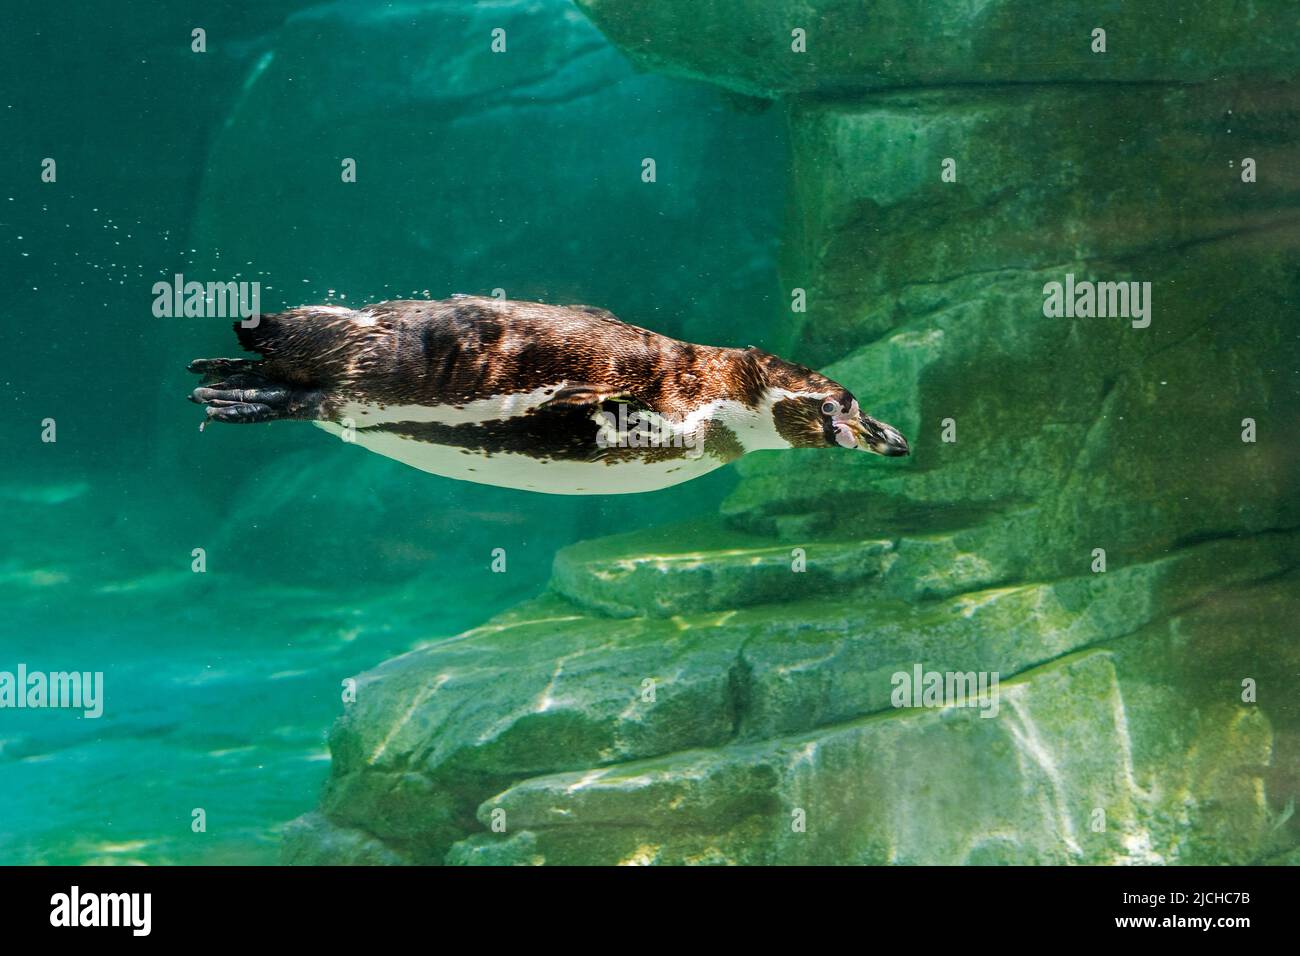 Pingouin en captivité Humboldt / pingouin péruvien (Spheniscus humboldti) originaire d'Amérique du Sud, nageant sous l'eau dans le zoo / jardin zoologique Banque D'Images